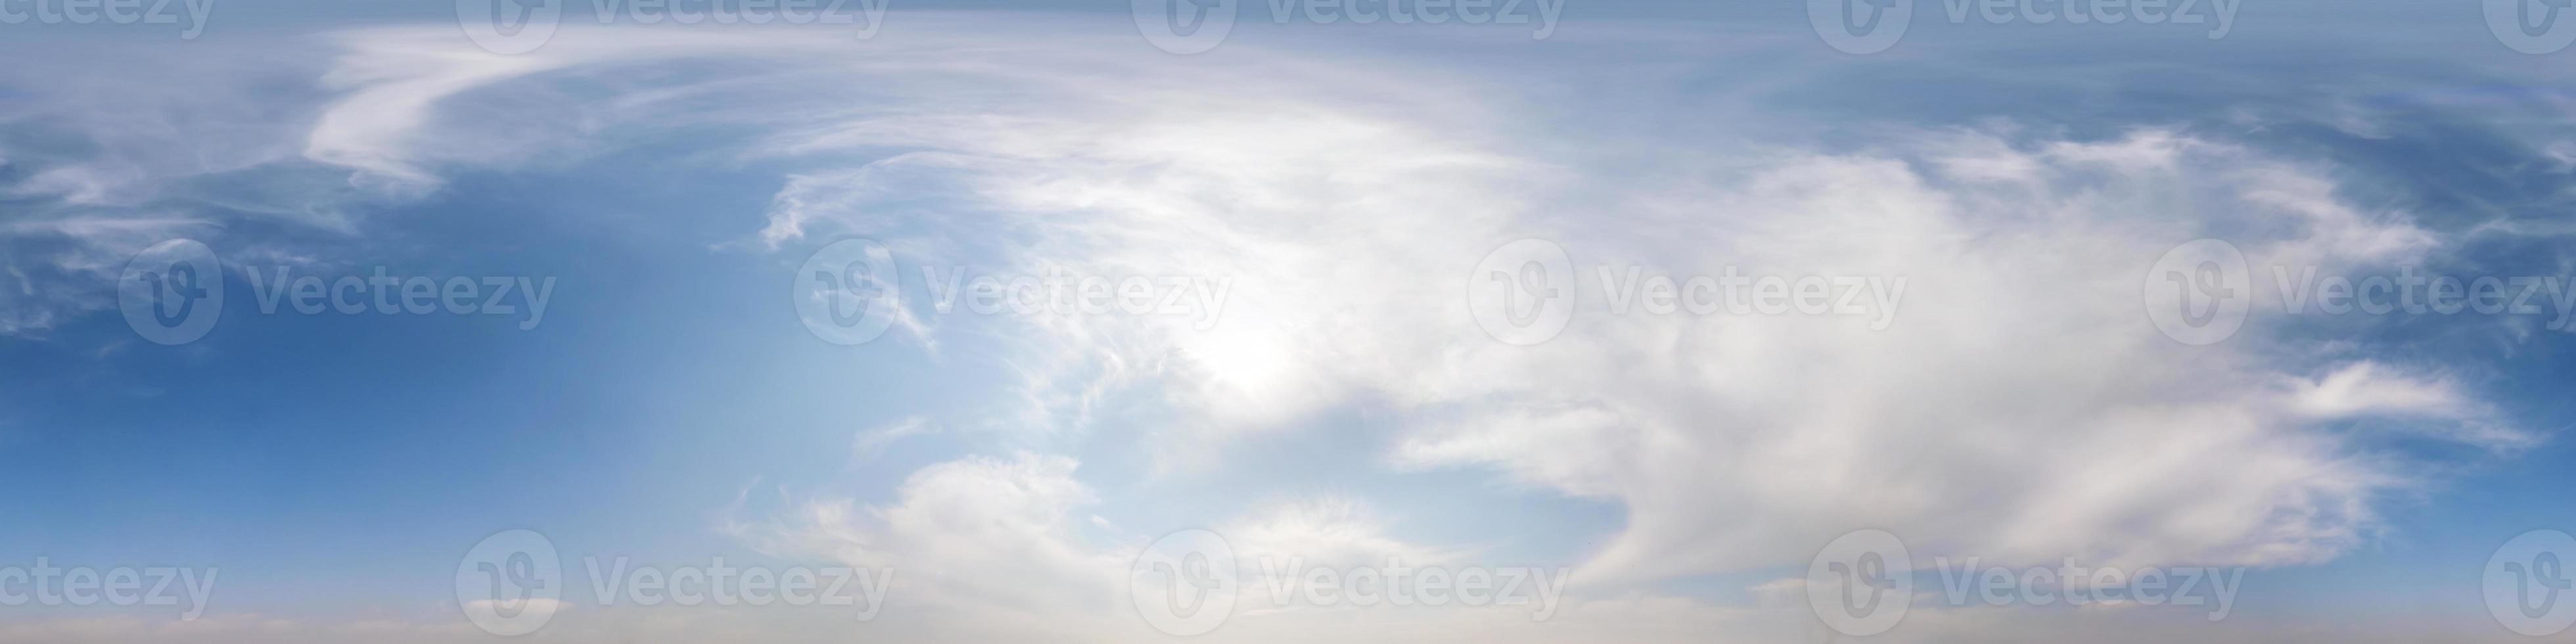 naadloos hdri-panorama 360 graden kijkhoek blauwe lucht met prachtige pluizige cumuluswolken zonder grond met zenit voor gebruik in 3D-graphics of game-ontwikkeling als sky dome of edit drone shot foto